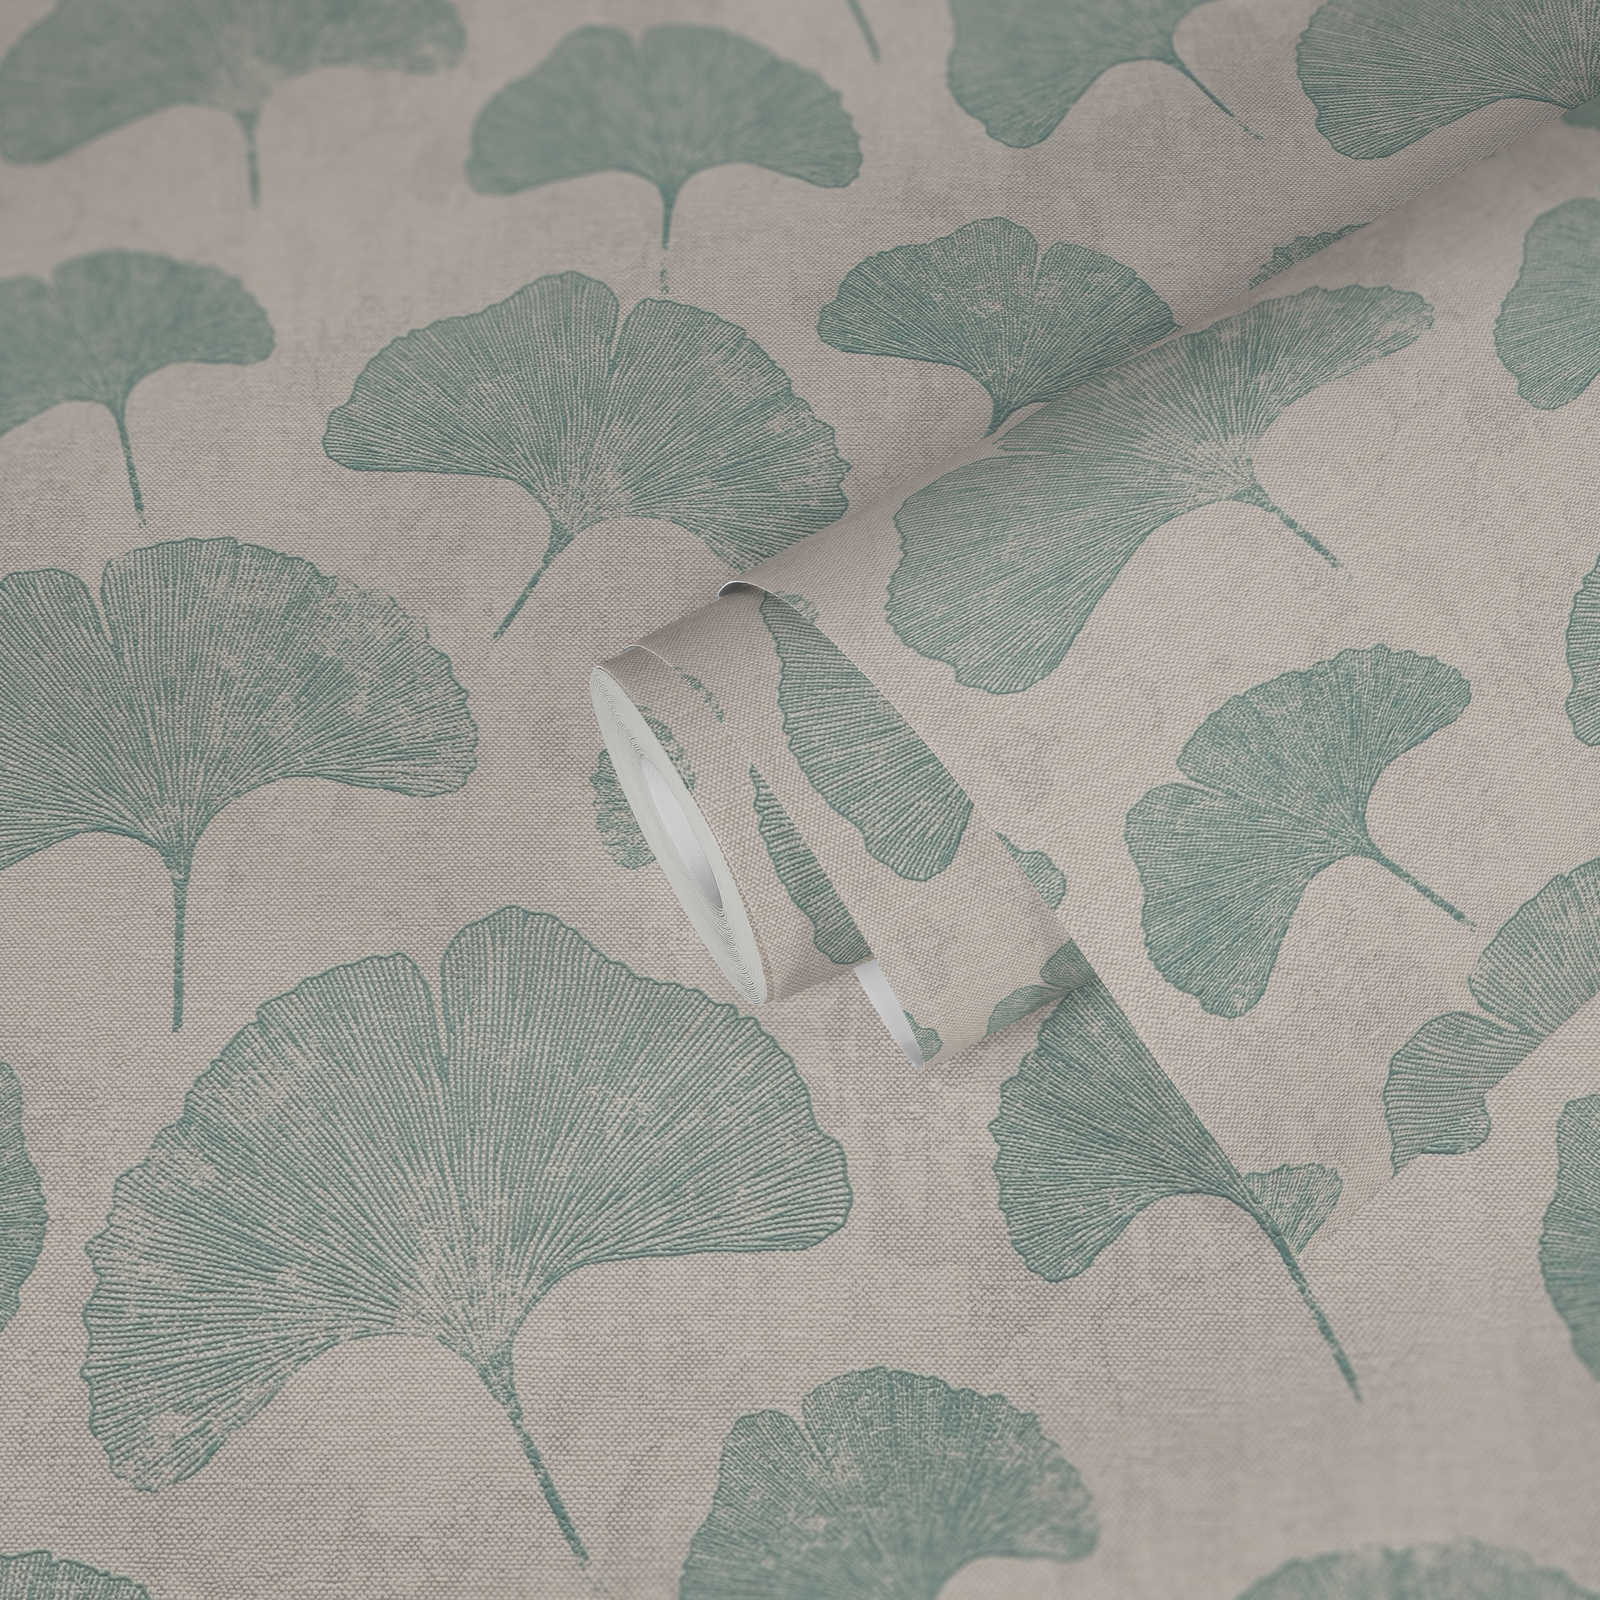             Blätter-Tapete floral matt strukturiert – Grau, Weiß, Mint
        